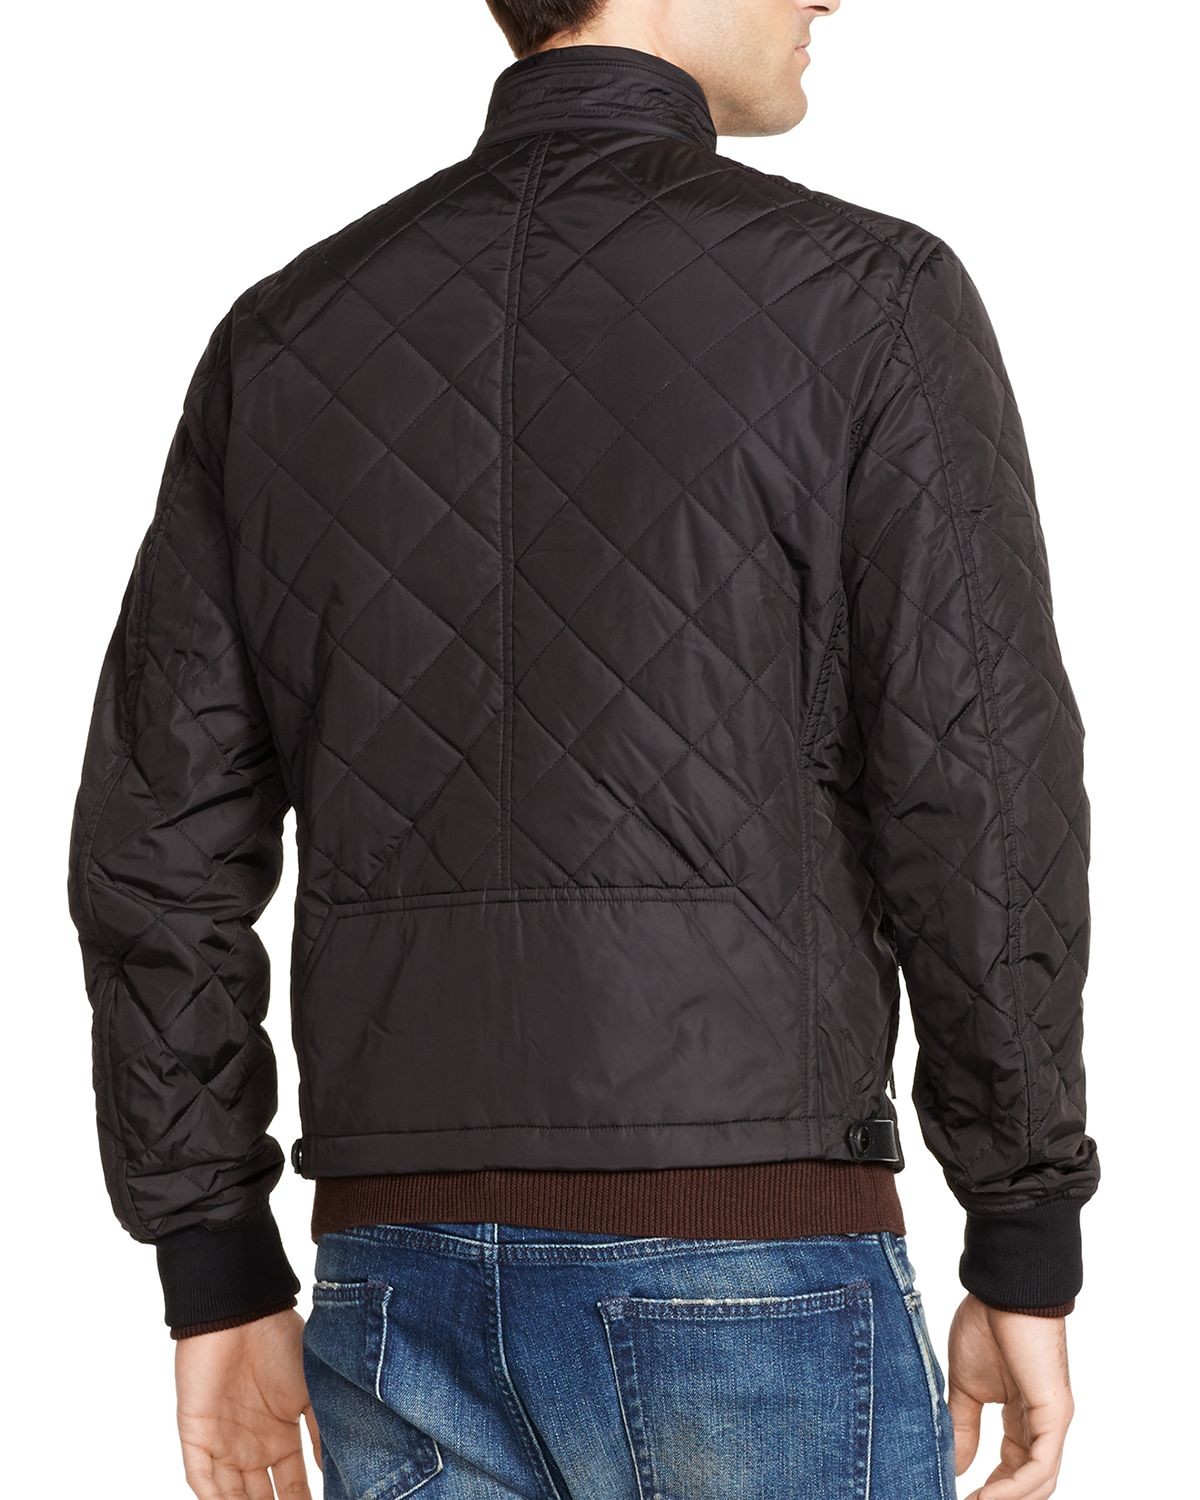 Lyst - Ralph Lauren Black Label Quilted Zip Jacket in Black for Men